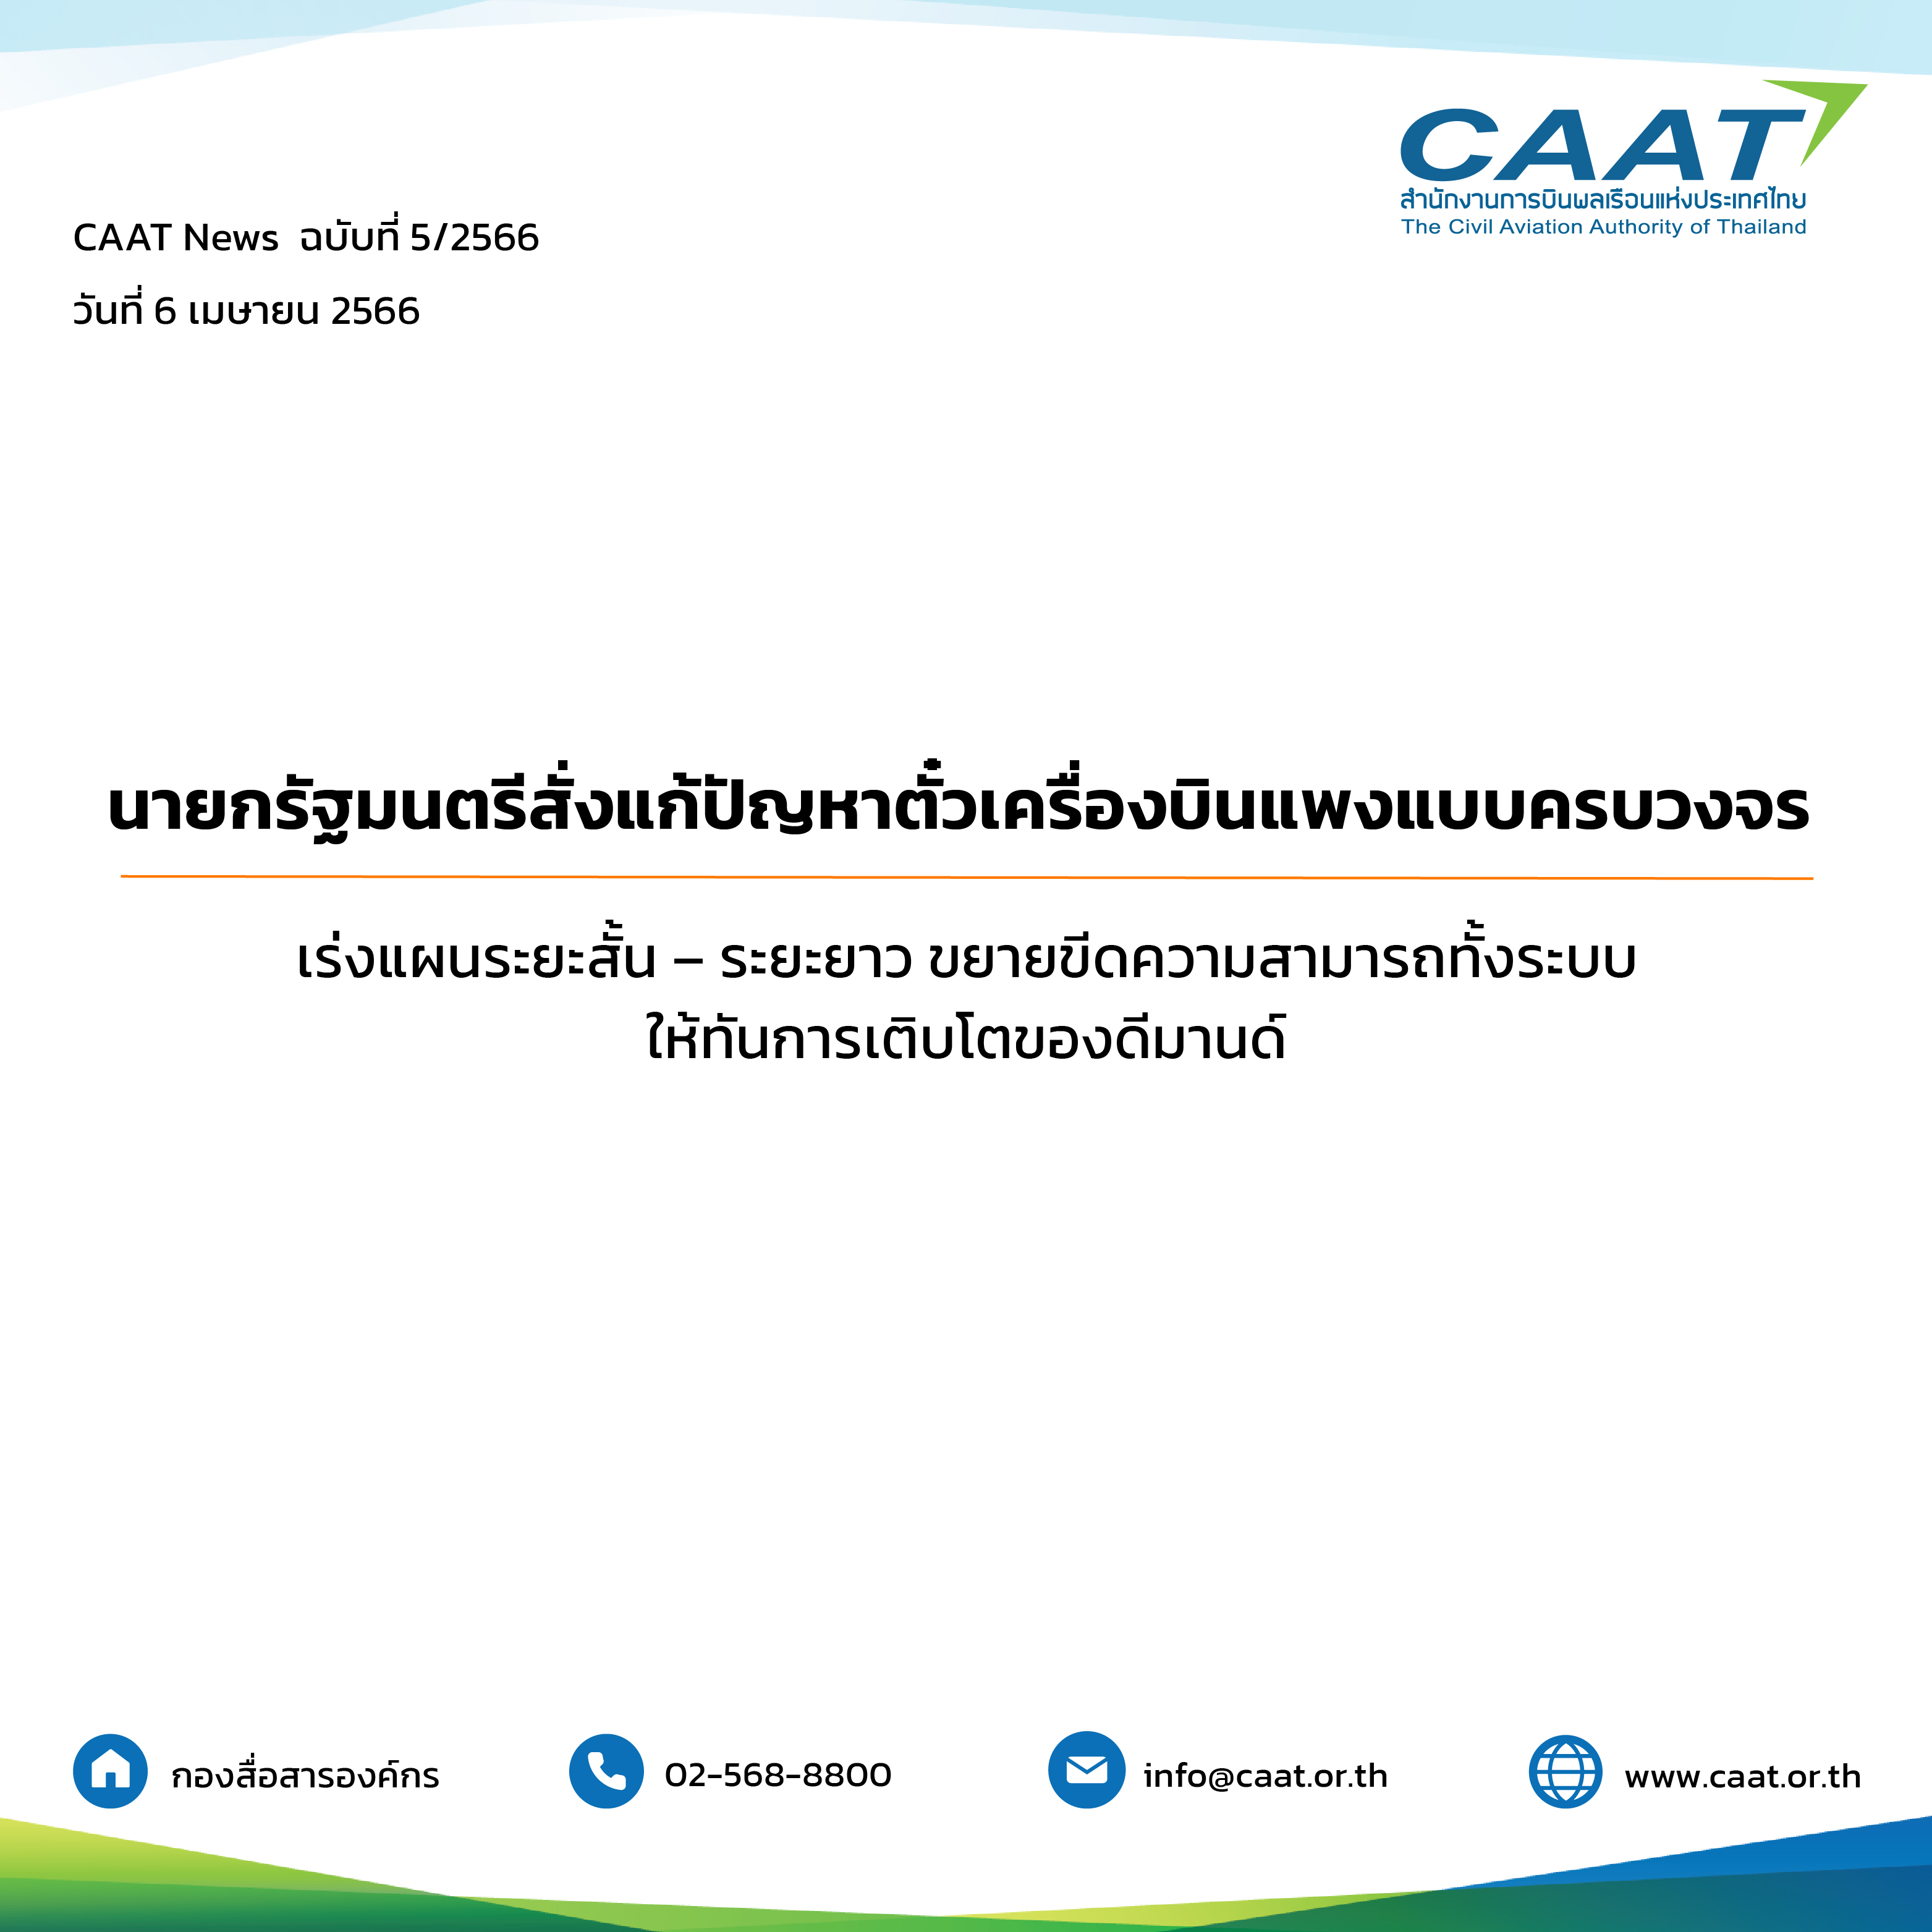 CAAT NEWS ฉบับที่ 5 / 2566 วันที่ 6 เมษายน 2566 นายกรัฐมนตรีสั่งแก้ปัญหาตั๋วเครื่องบินแพงแบบครบวงจร เร่งแผนระยะสั้น – ระยะยาวขยายขีดความสามารถทั้งระบบให้ทันการเติบโตของดีมานด์